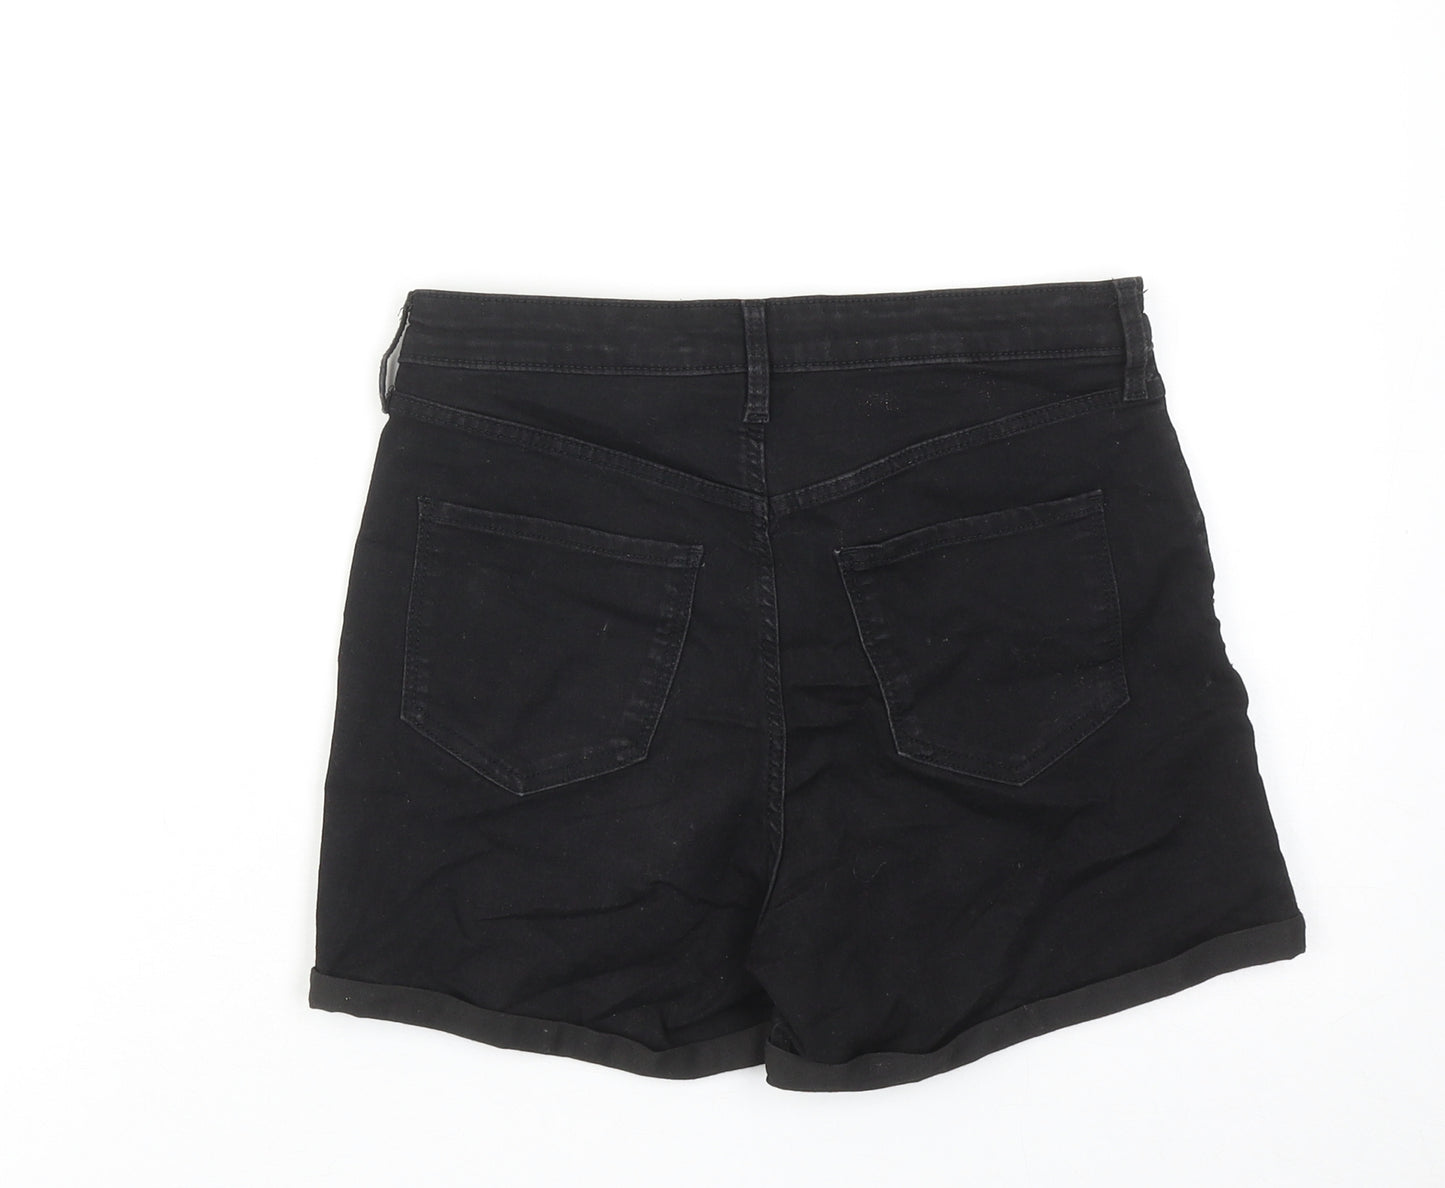 H&M Girls Black Cotton Hot Pants Shorts Size 13-14 Years Regular Zip